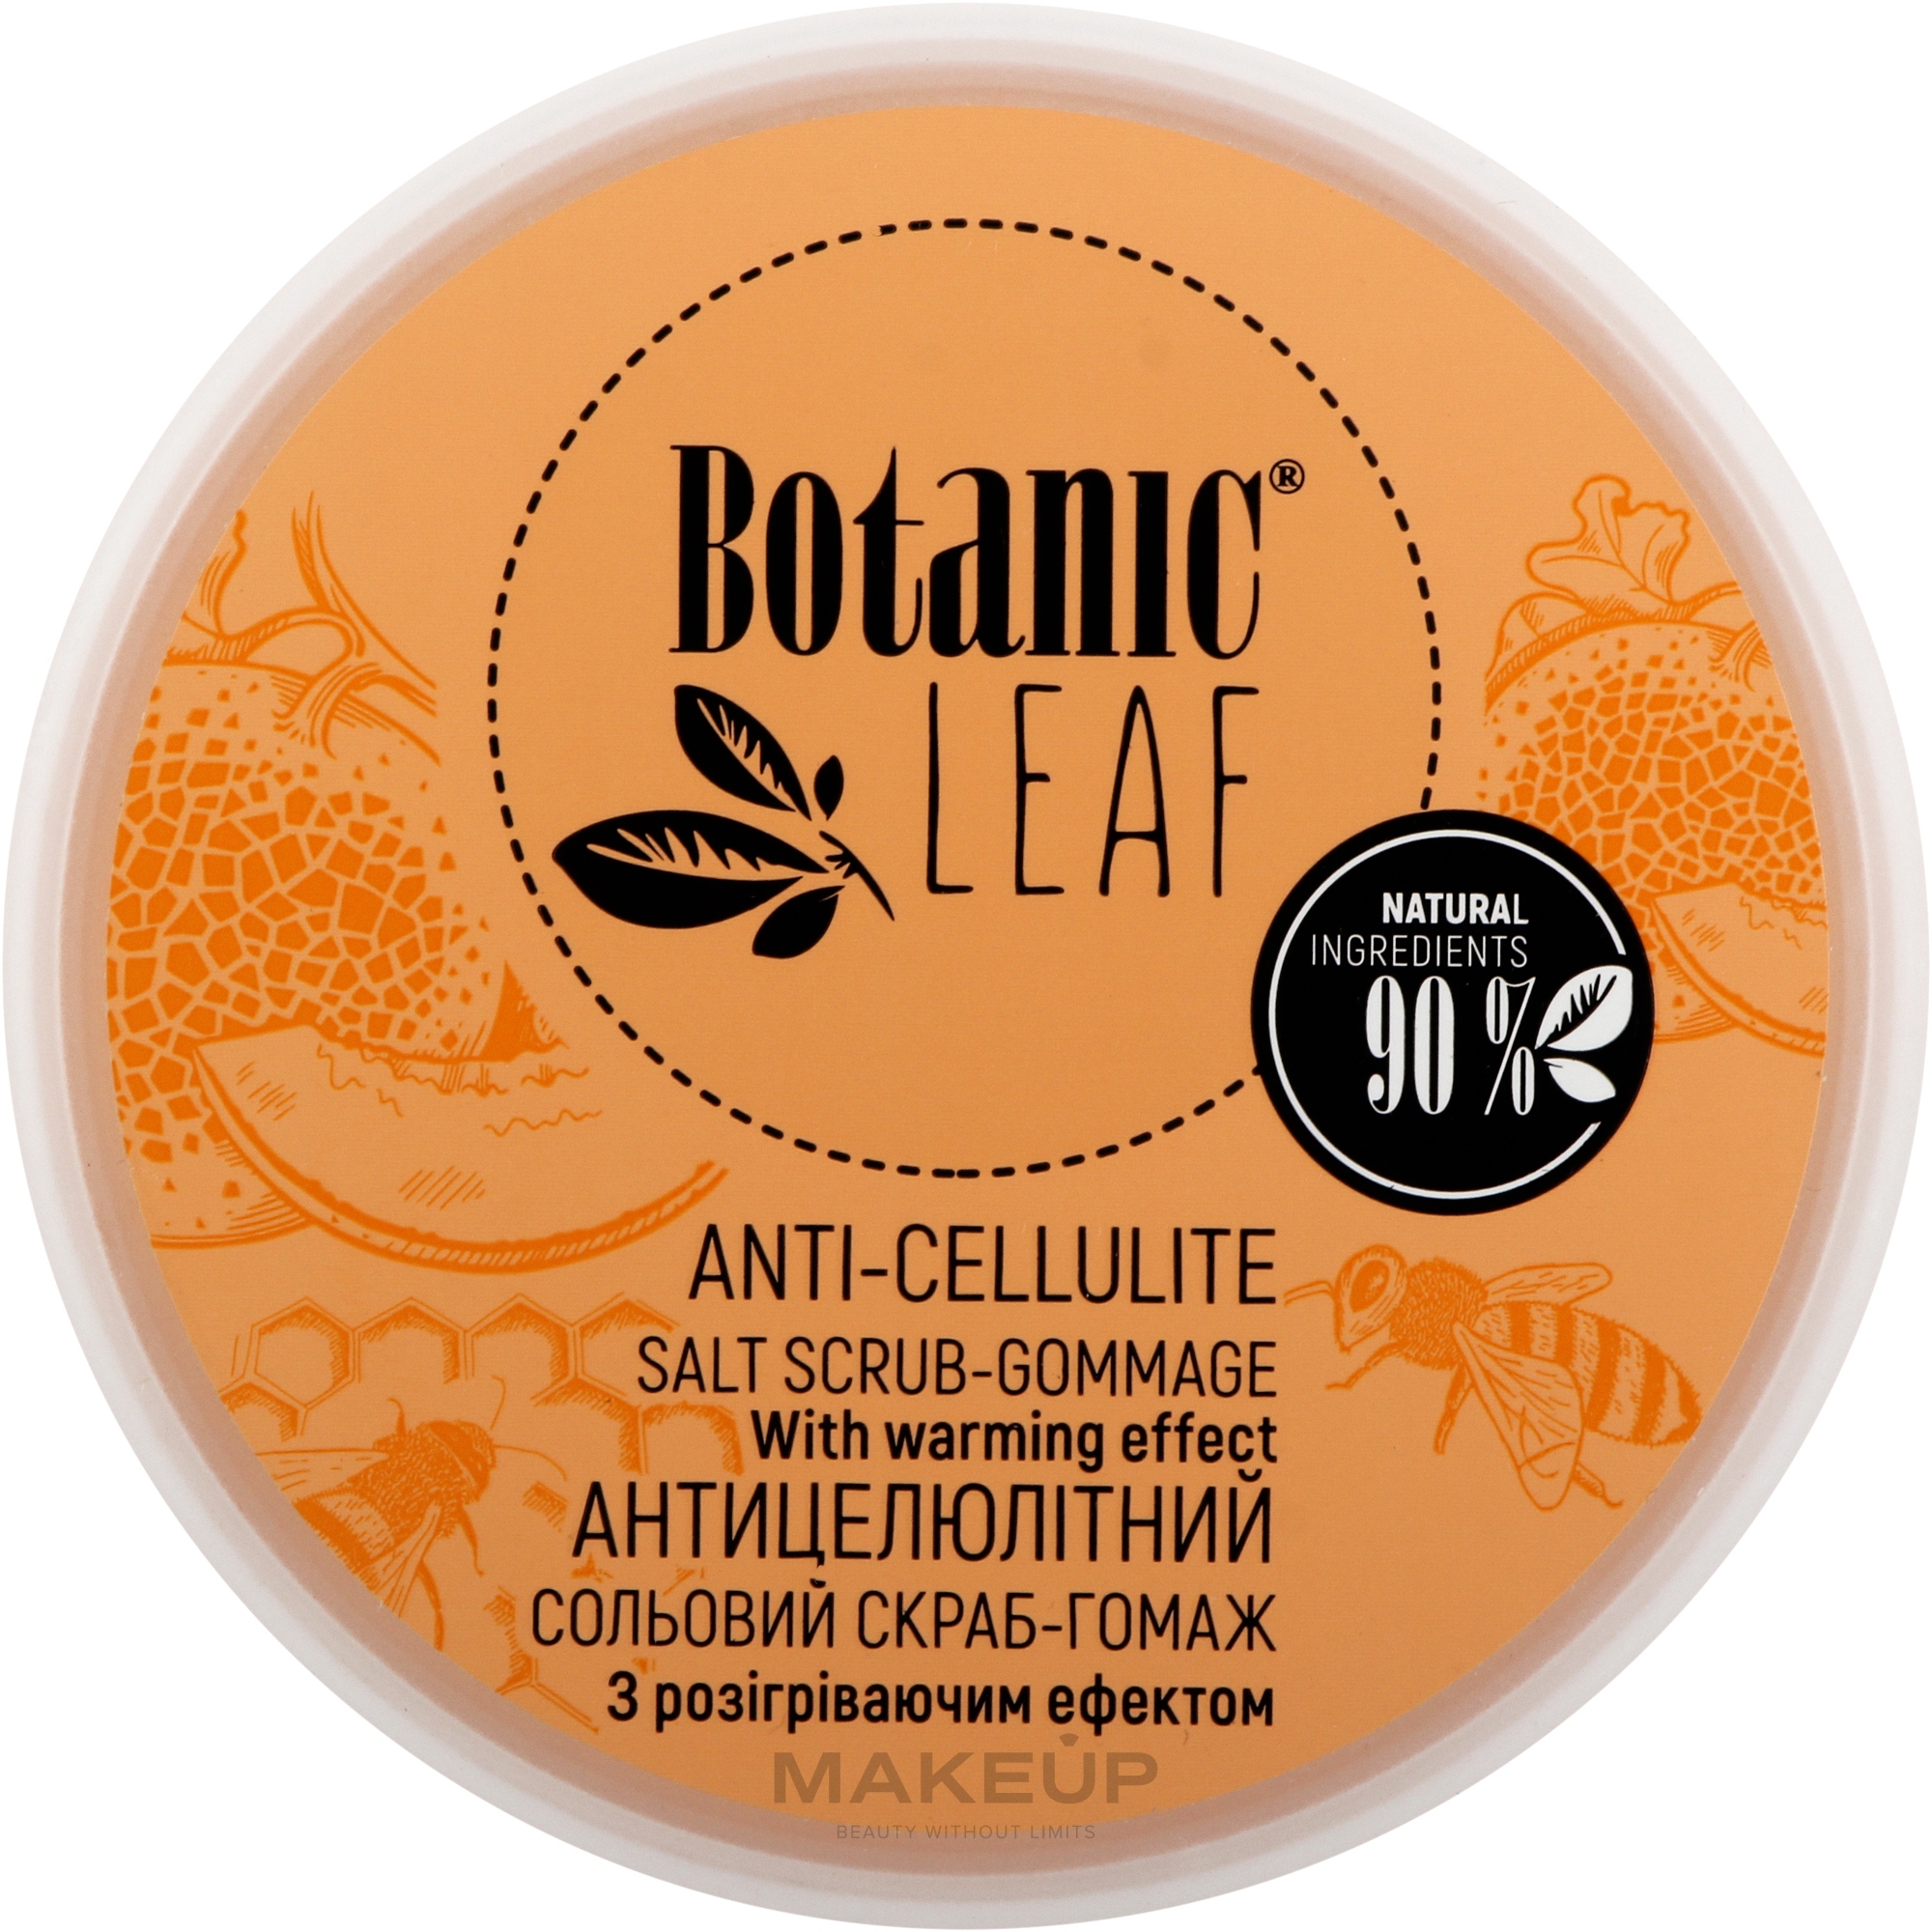 Скраб-гоммаж солевой антицеллюлитный для тела - Botanic Leaf Anti-Cellulite Salt Scrub-Gommage — фото 300g